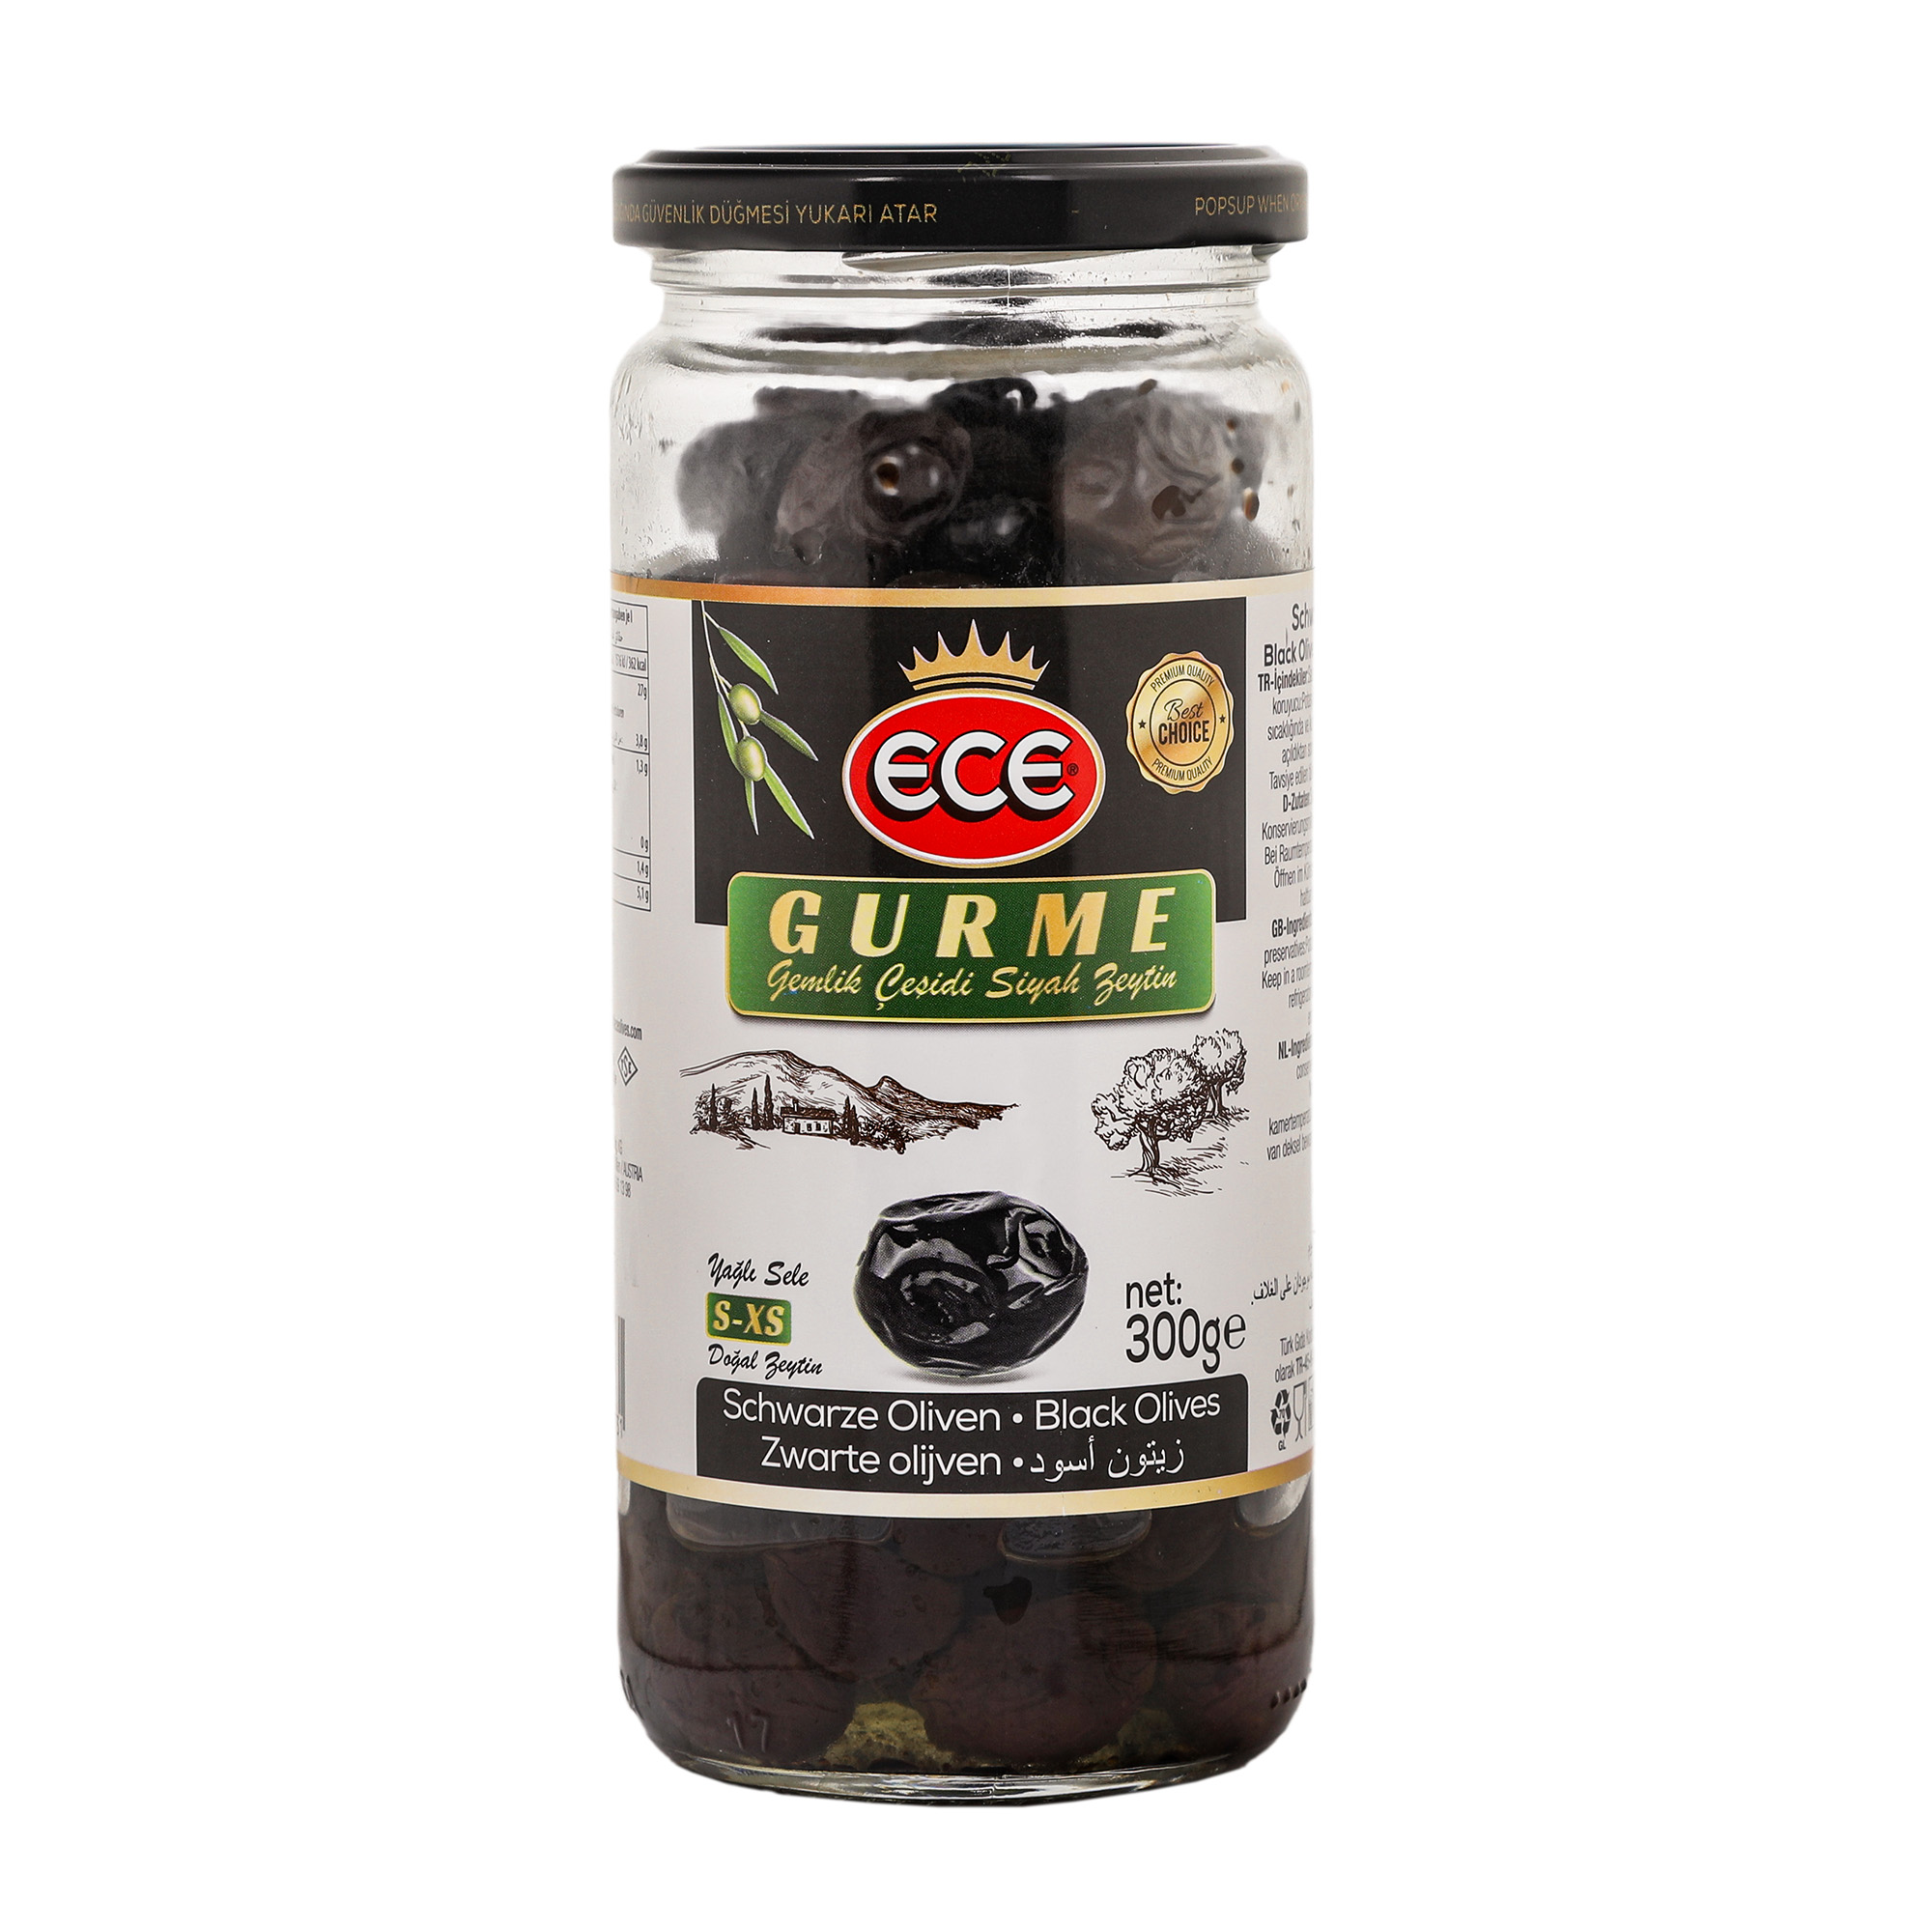 Оливки черные Ece Gurme в масле с косточкой, 300 г оливки черные ece premium в масле с косточкой 300 г